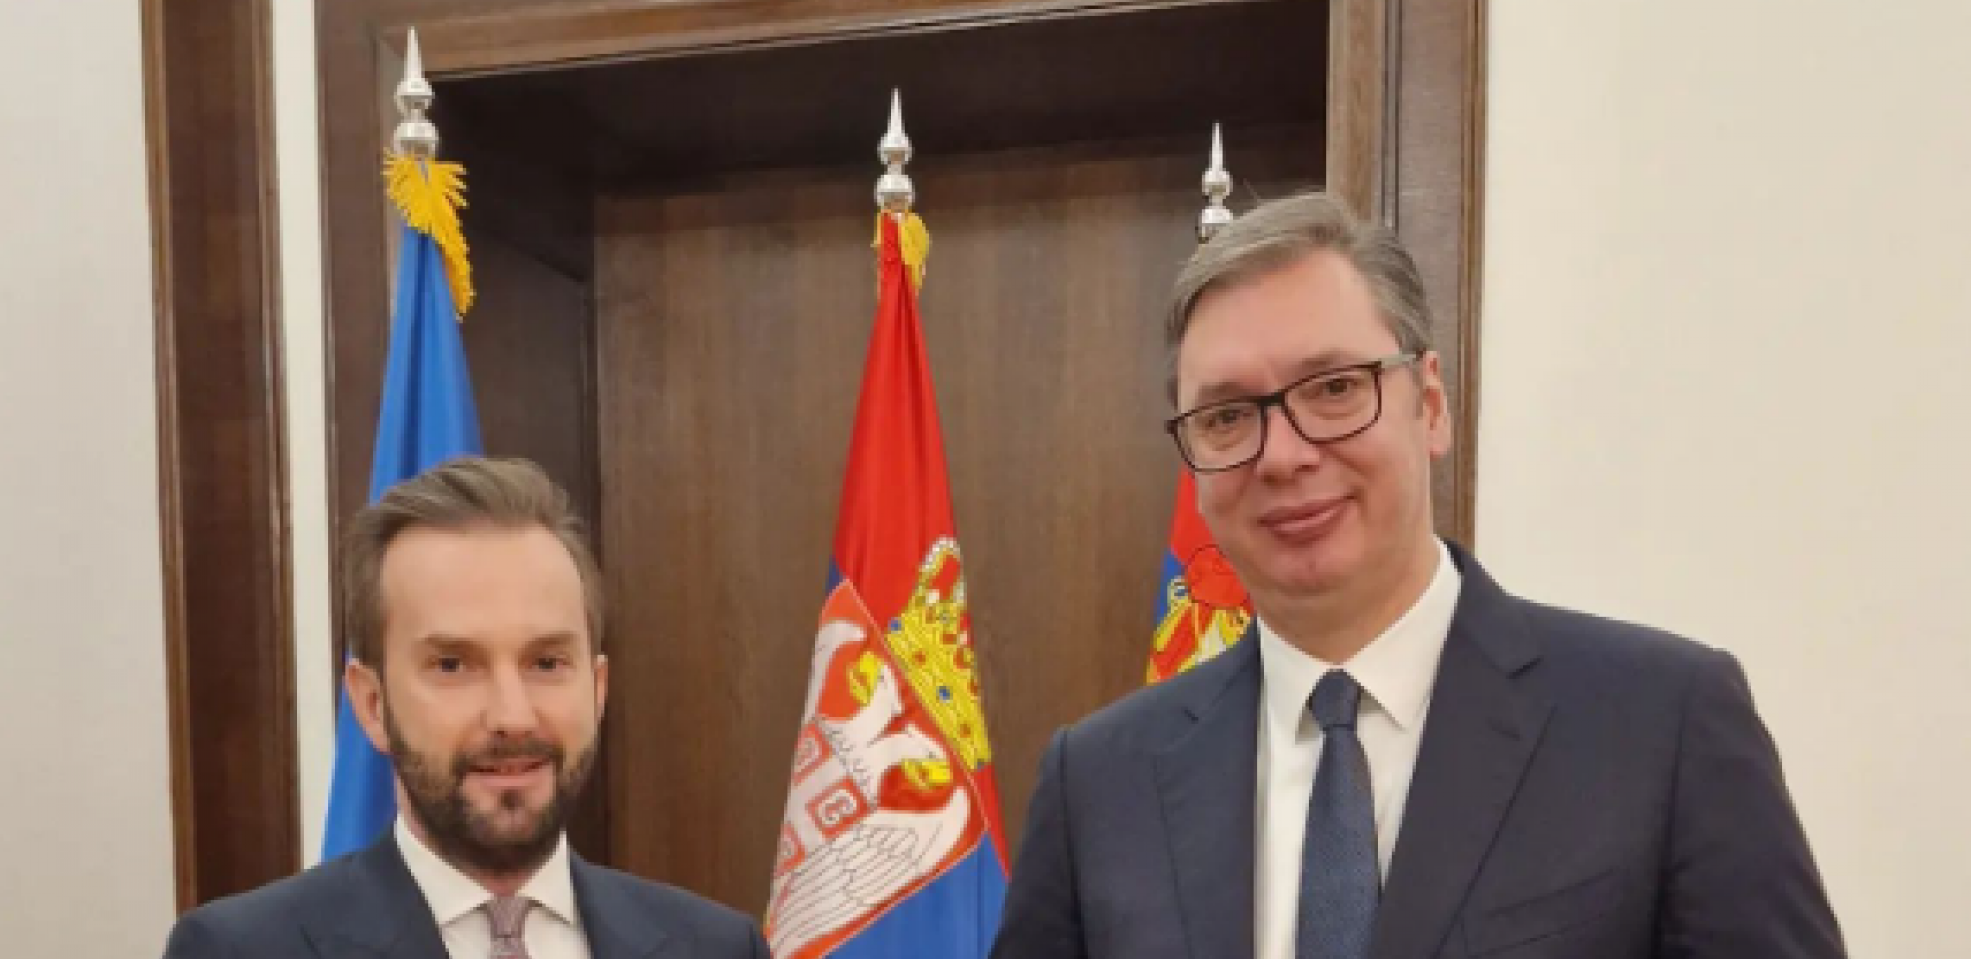 ''POŽELEO SAM DOBRODOŠLICU NOVOM DIREKTORU'' Predsednik Vučić primio Jakova Devčića